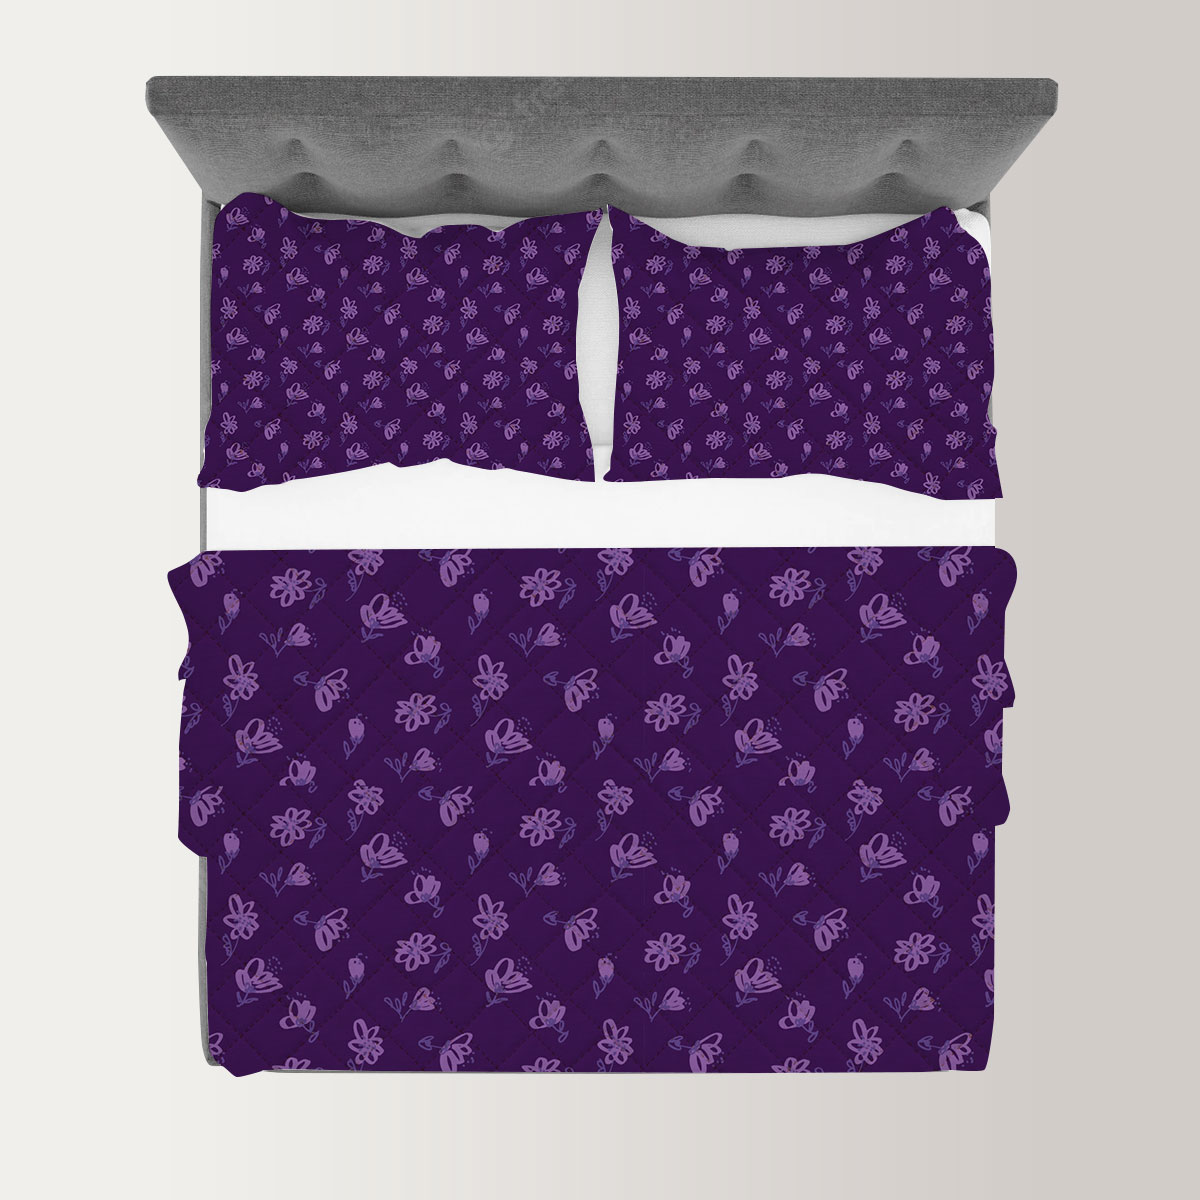 Vintage Violet Floral Seamless Pattern Quilt Set